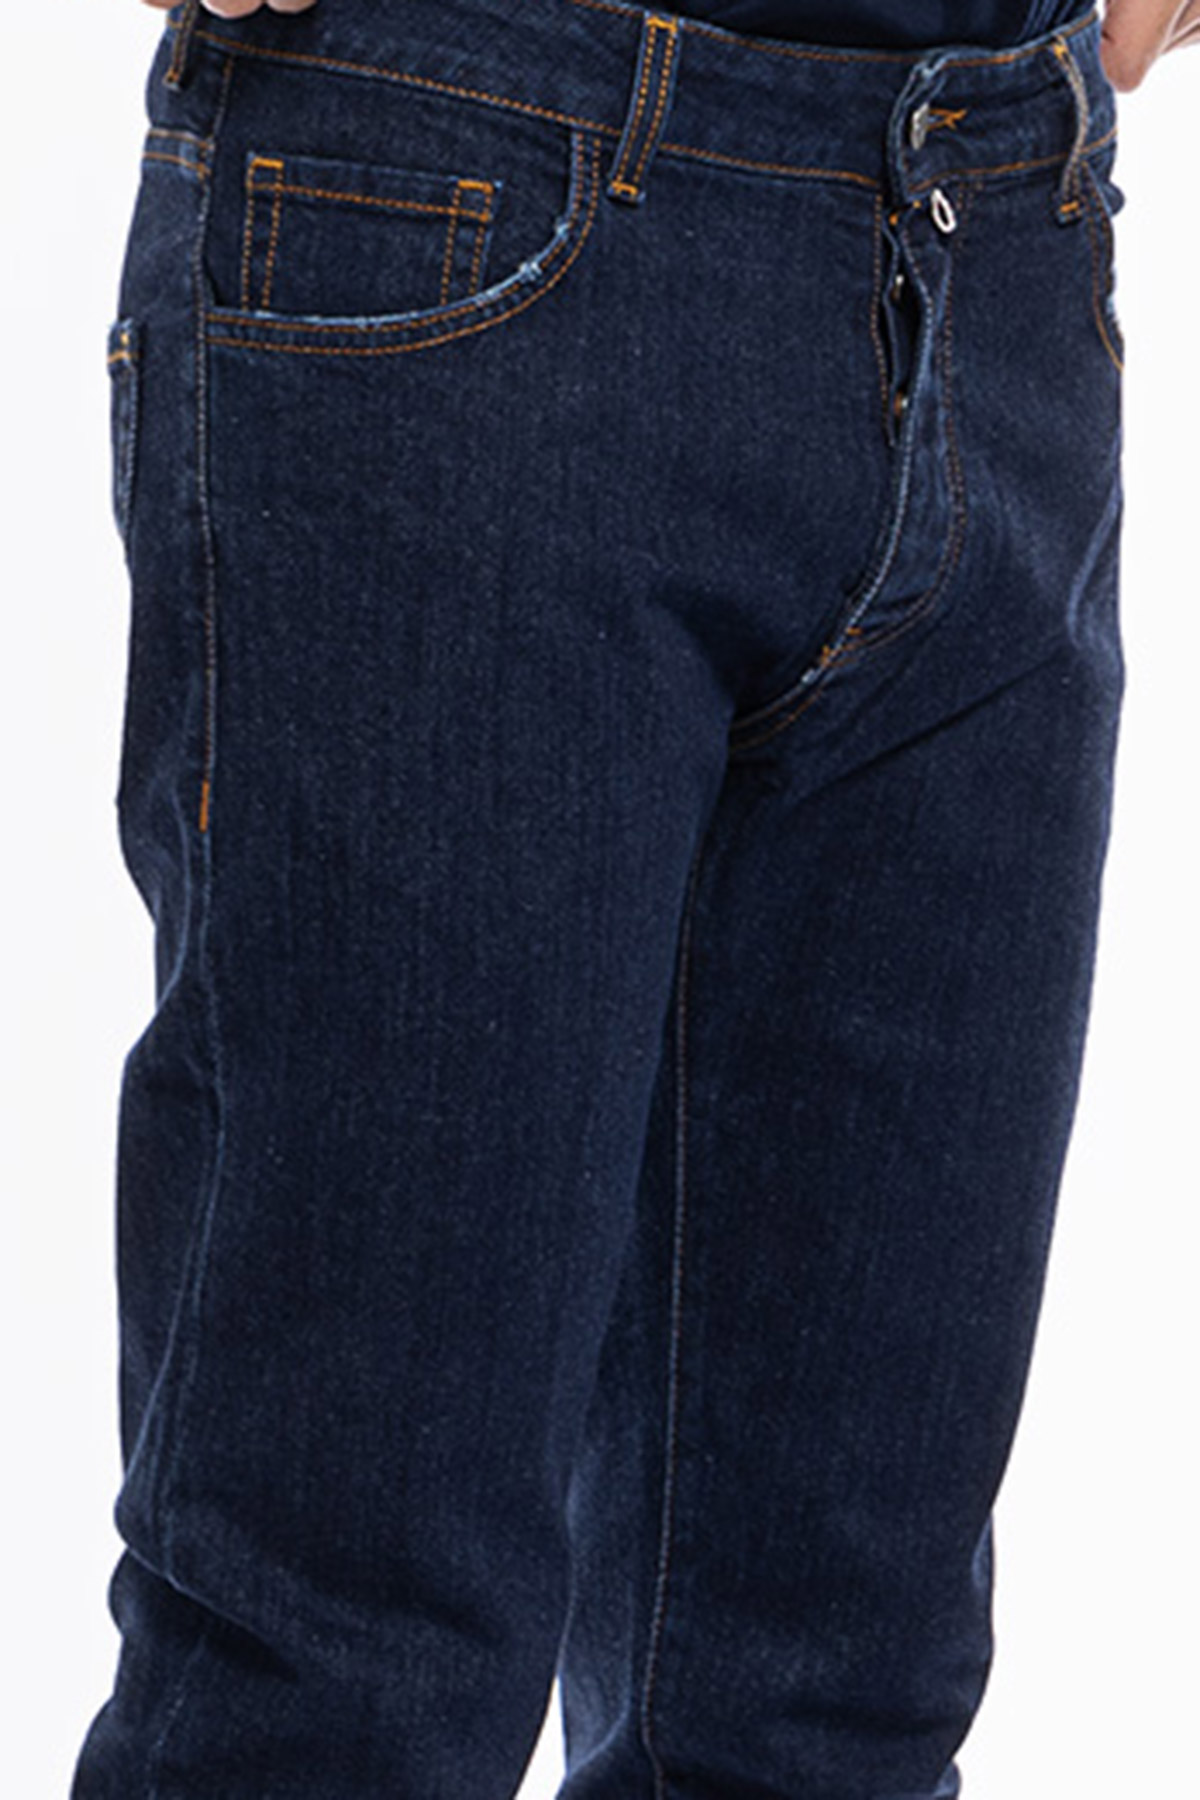 Jeans uomo lavaggio zero tinta unita modello 5 tasche slim fit made in italy